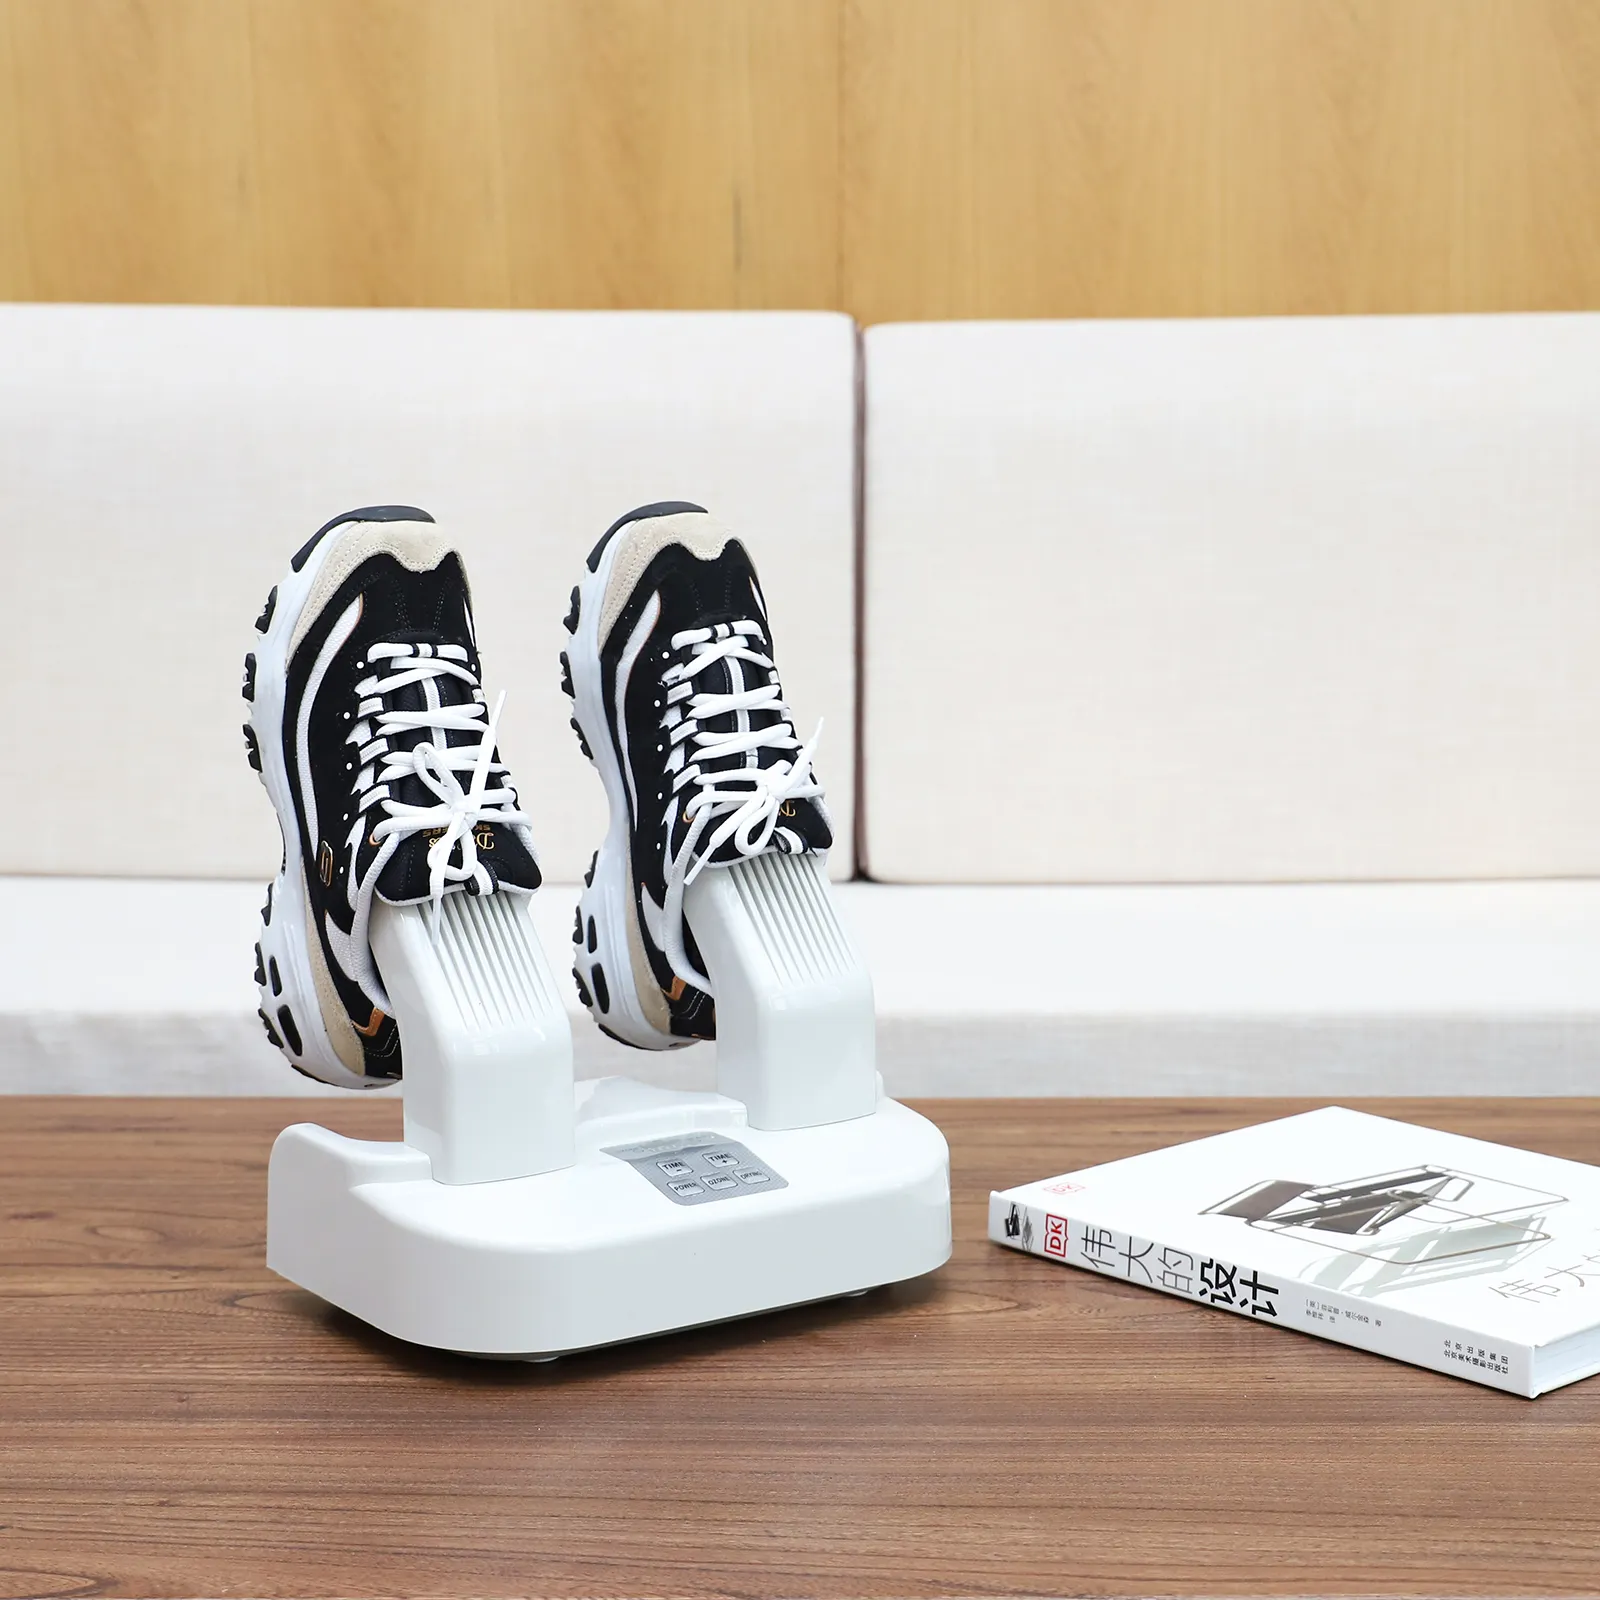 Nem alma ozon kask kurutma kayak Boot kurutma ayakkabı kurutma makinesi ile zamanlayıcı taşınabilir elektrikli ayakkabı isıtıcı